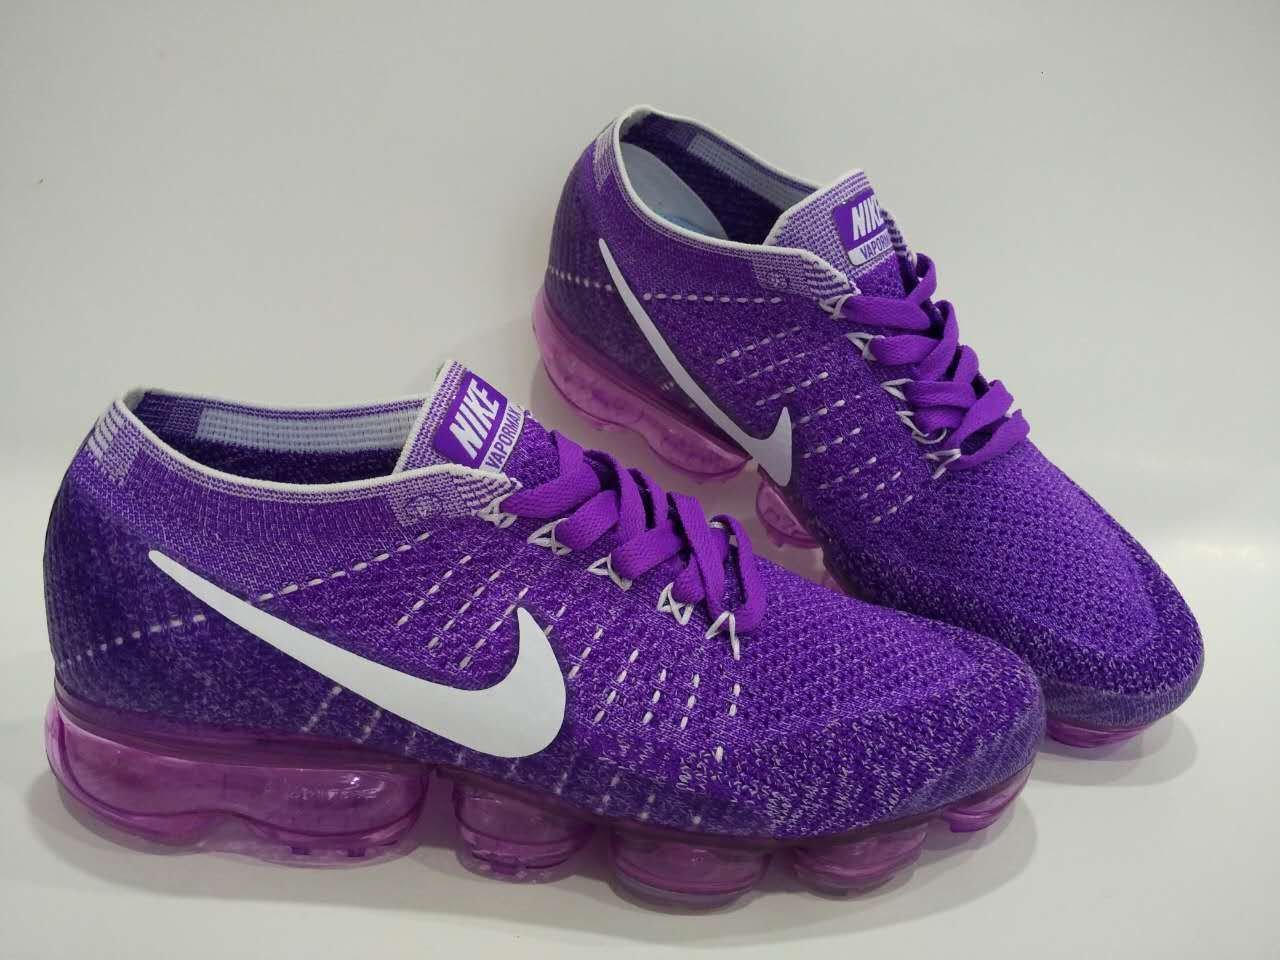 Nike Flyknit Max Womens Purple. Nike VAPORMAX фиолетовые. Кроссовки Nike Flyknit Trainer 2017 'Night Purple. Найк кари 4 фиолетовые. Nike фиолетовые кроссовки